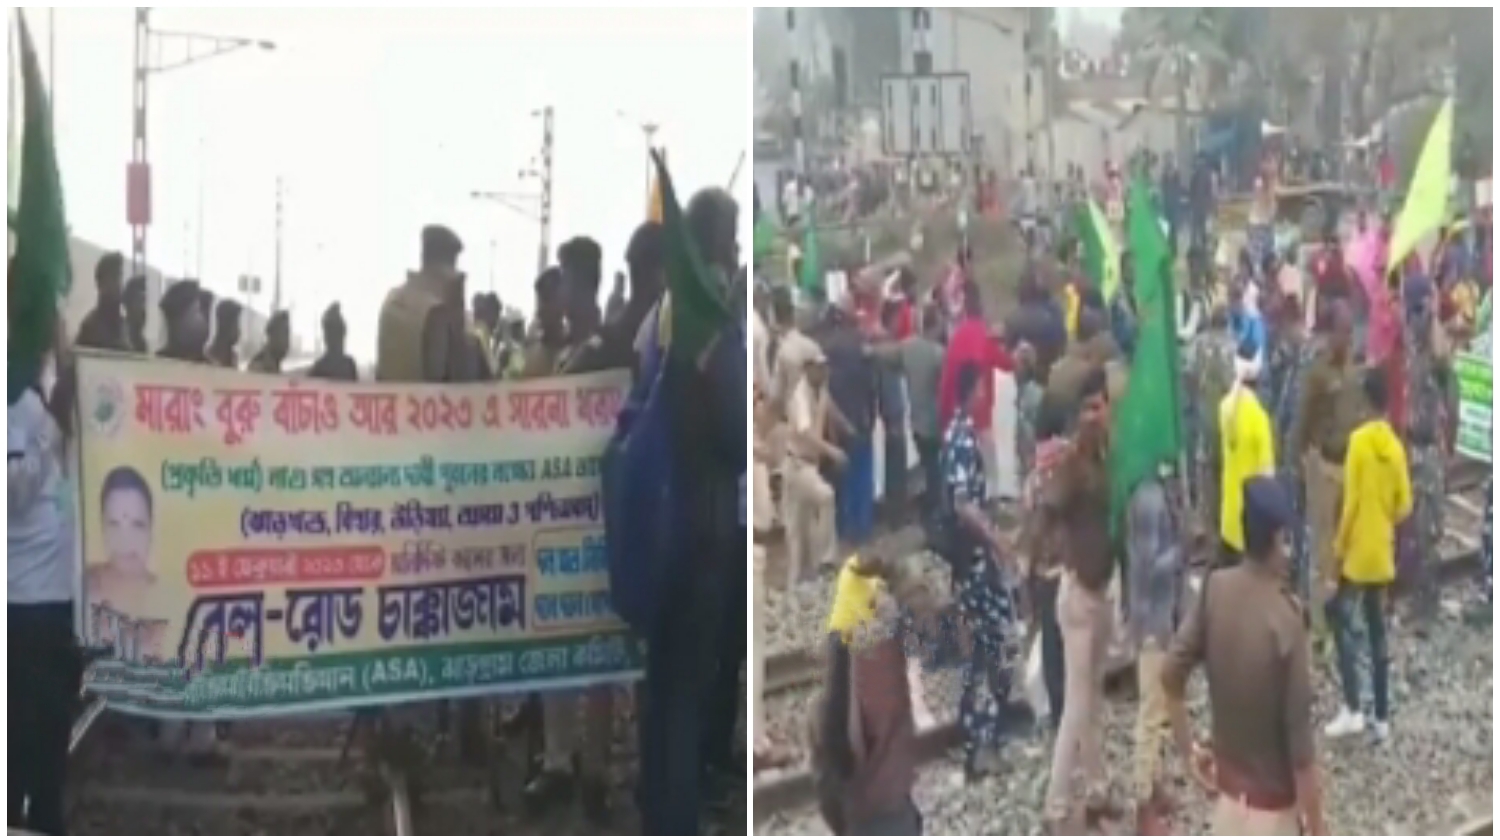 Adivasi Protest: রাজ্যজুড়ে আদিবাসীদের রেল অবরোধ, ভোগান্তিতে নিত্য যাত্রীরা